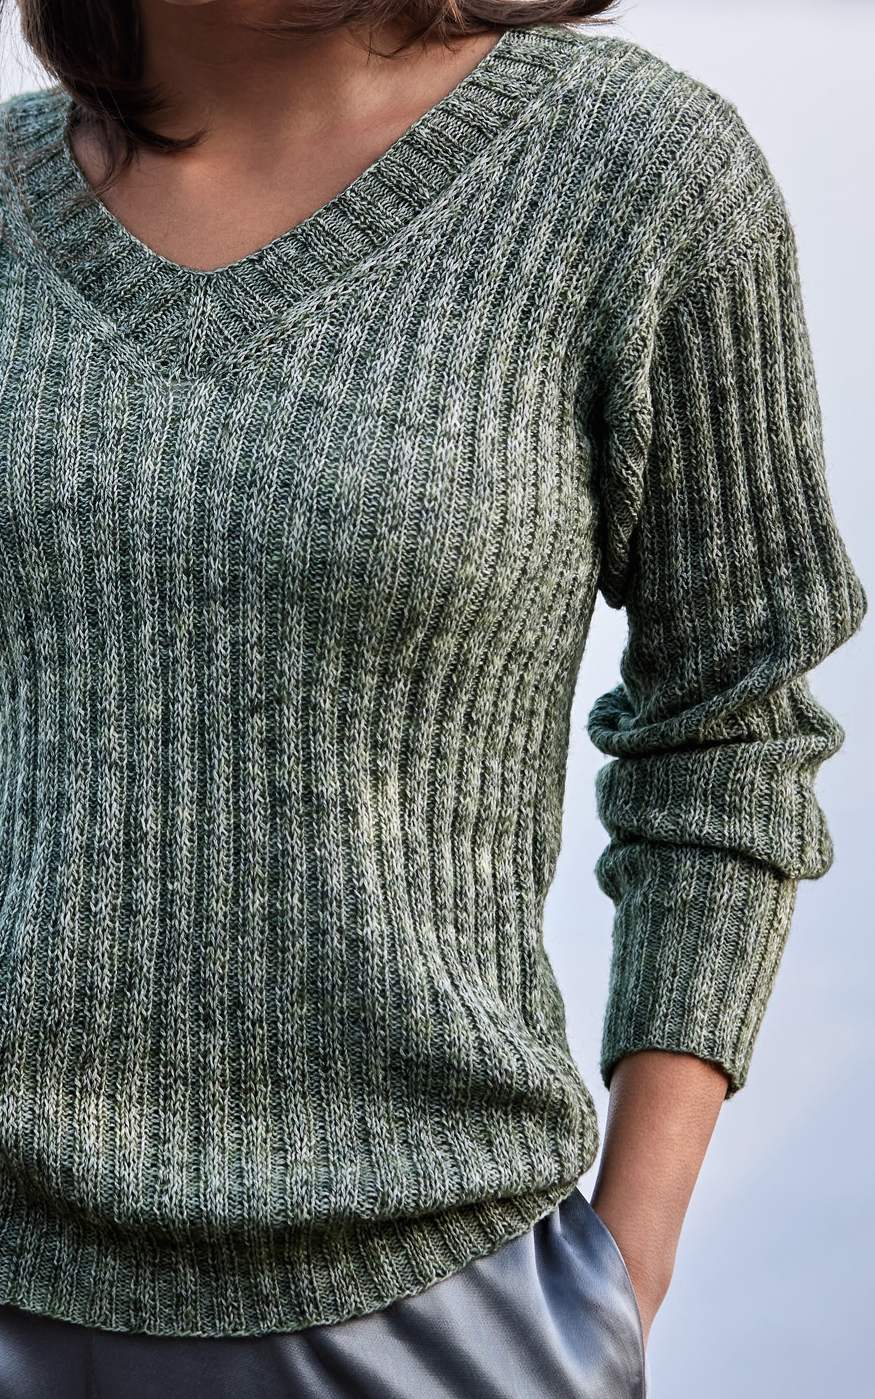 Pullover mit V-Ausschnitt und Rippenmuster - Strickset von LANA GROSSA jetzt online kaufen bei OONIQUE